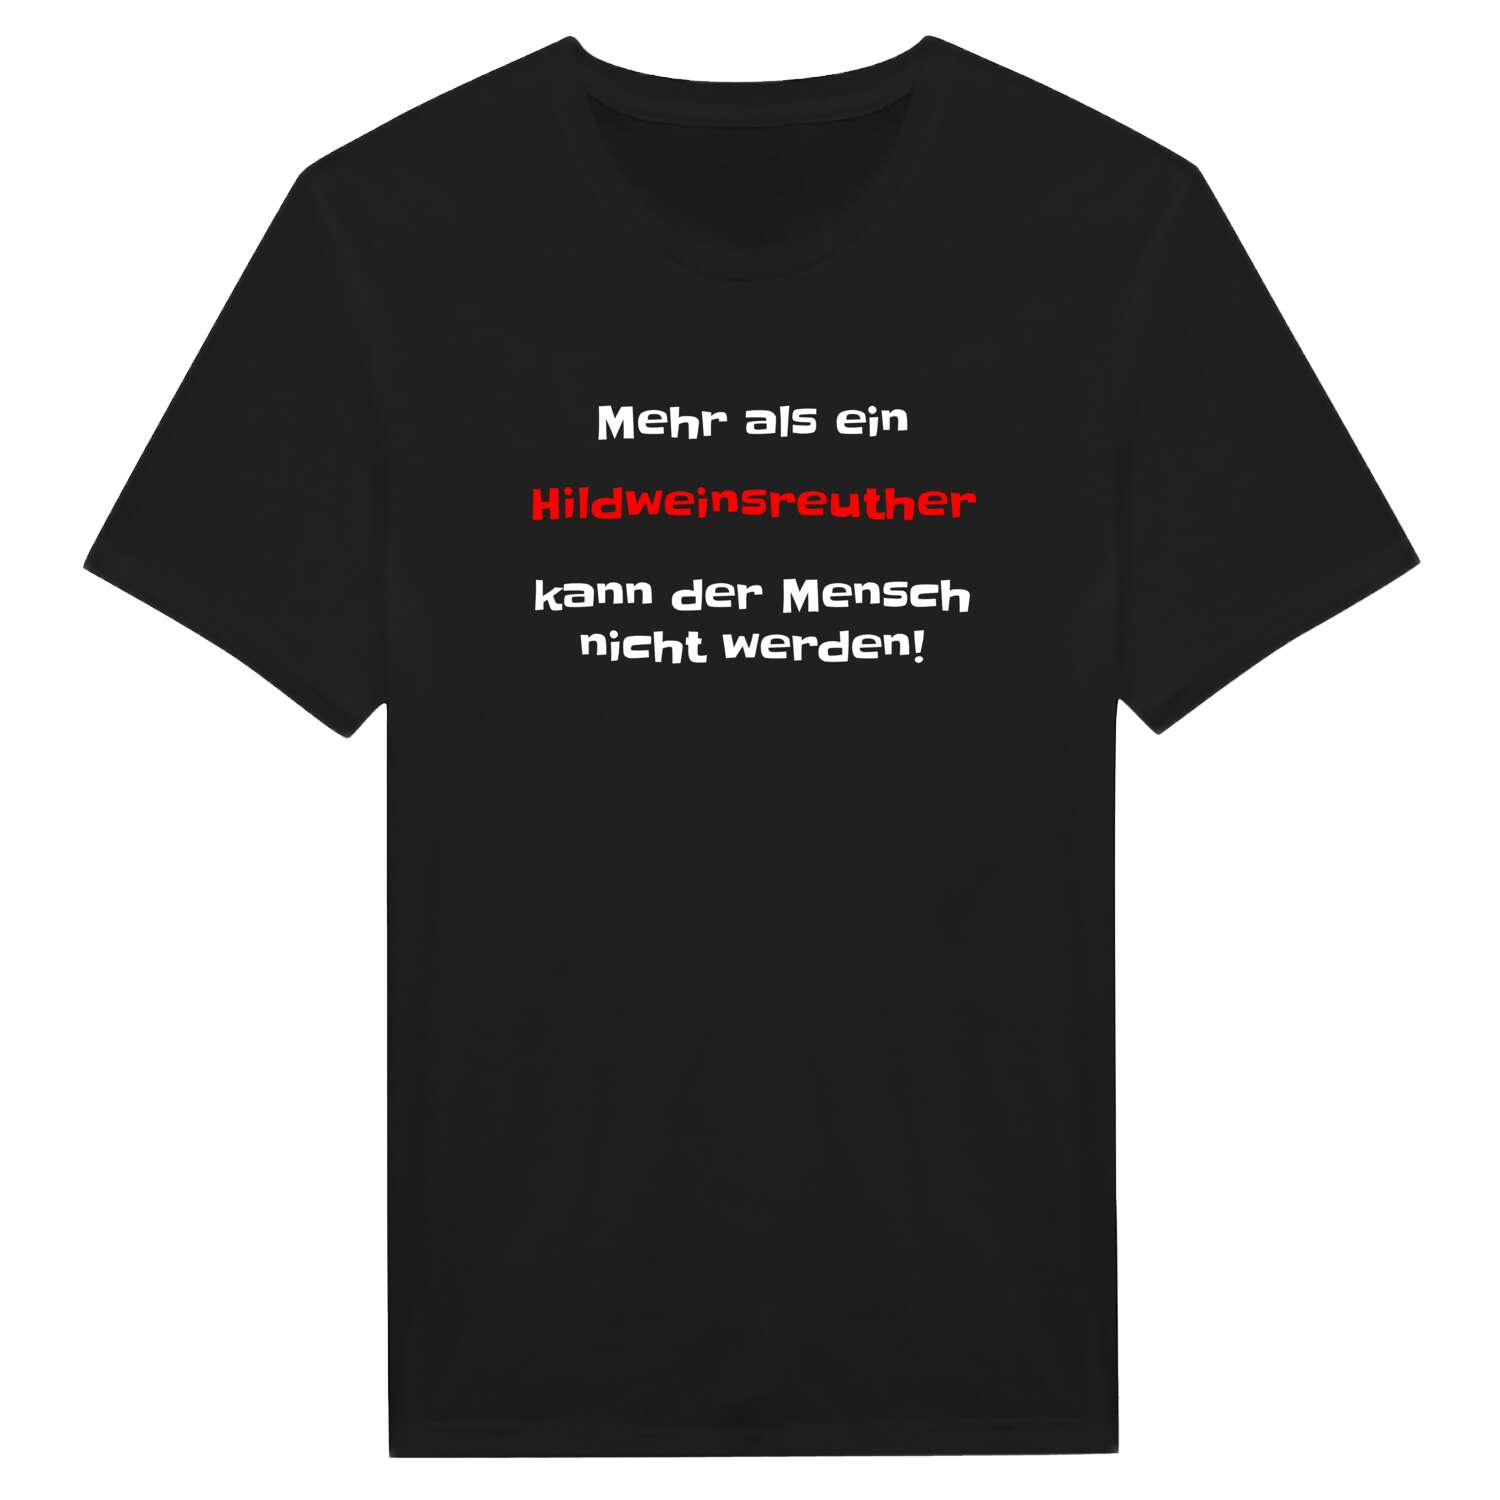 Hildweinsreuth T-Shirt »Mehr als ein«